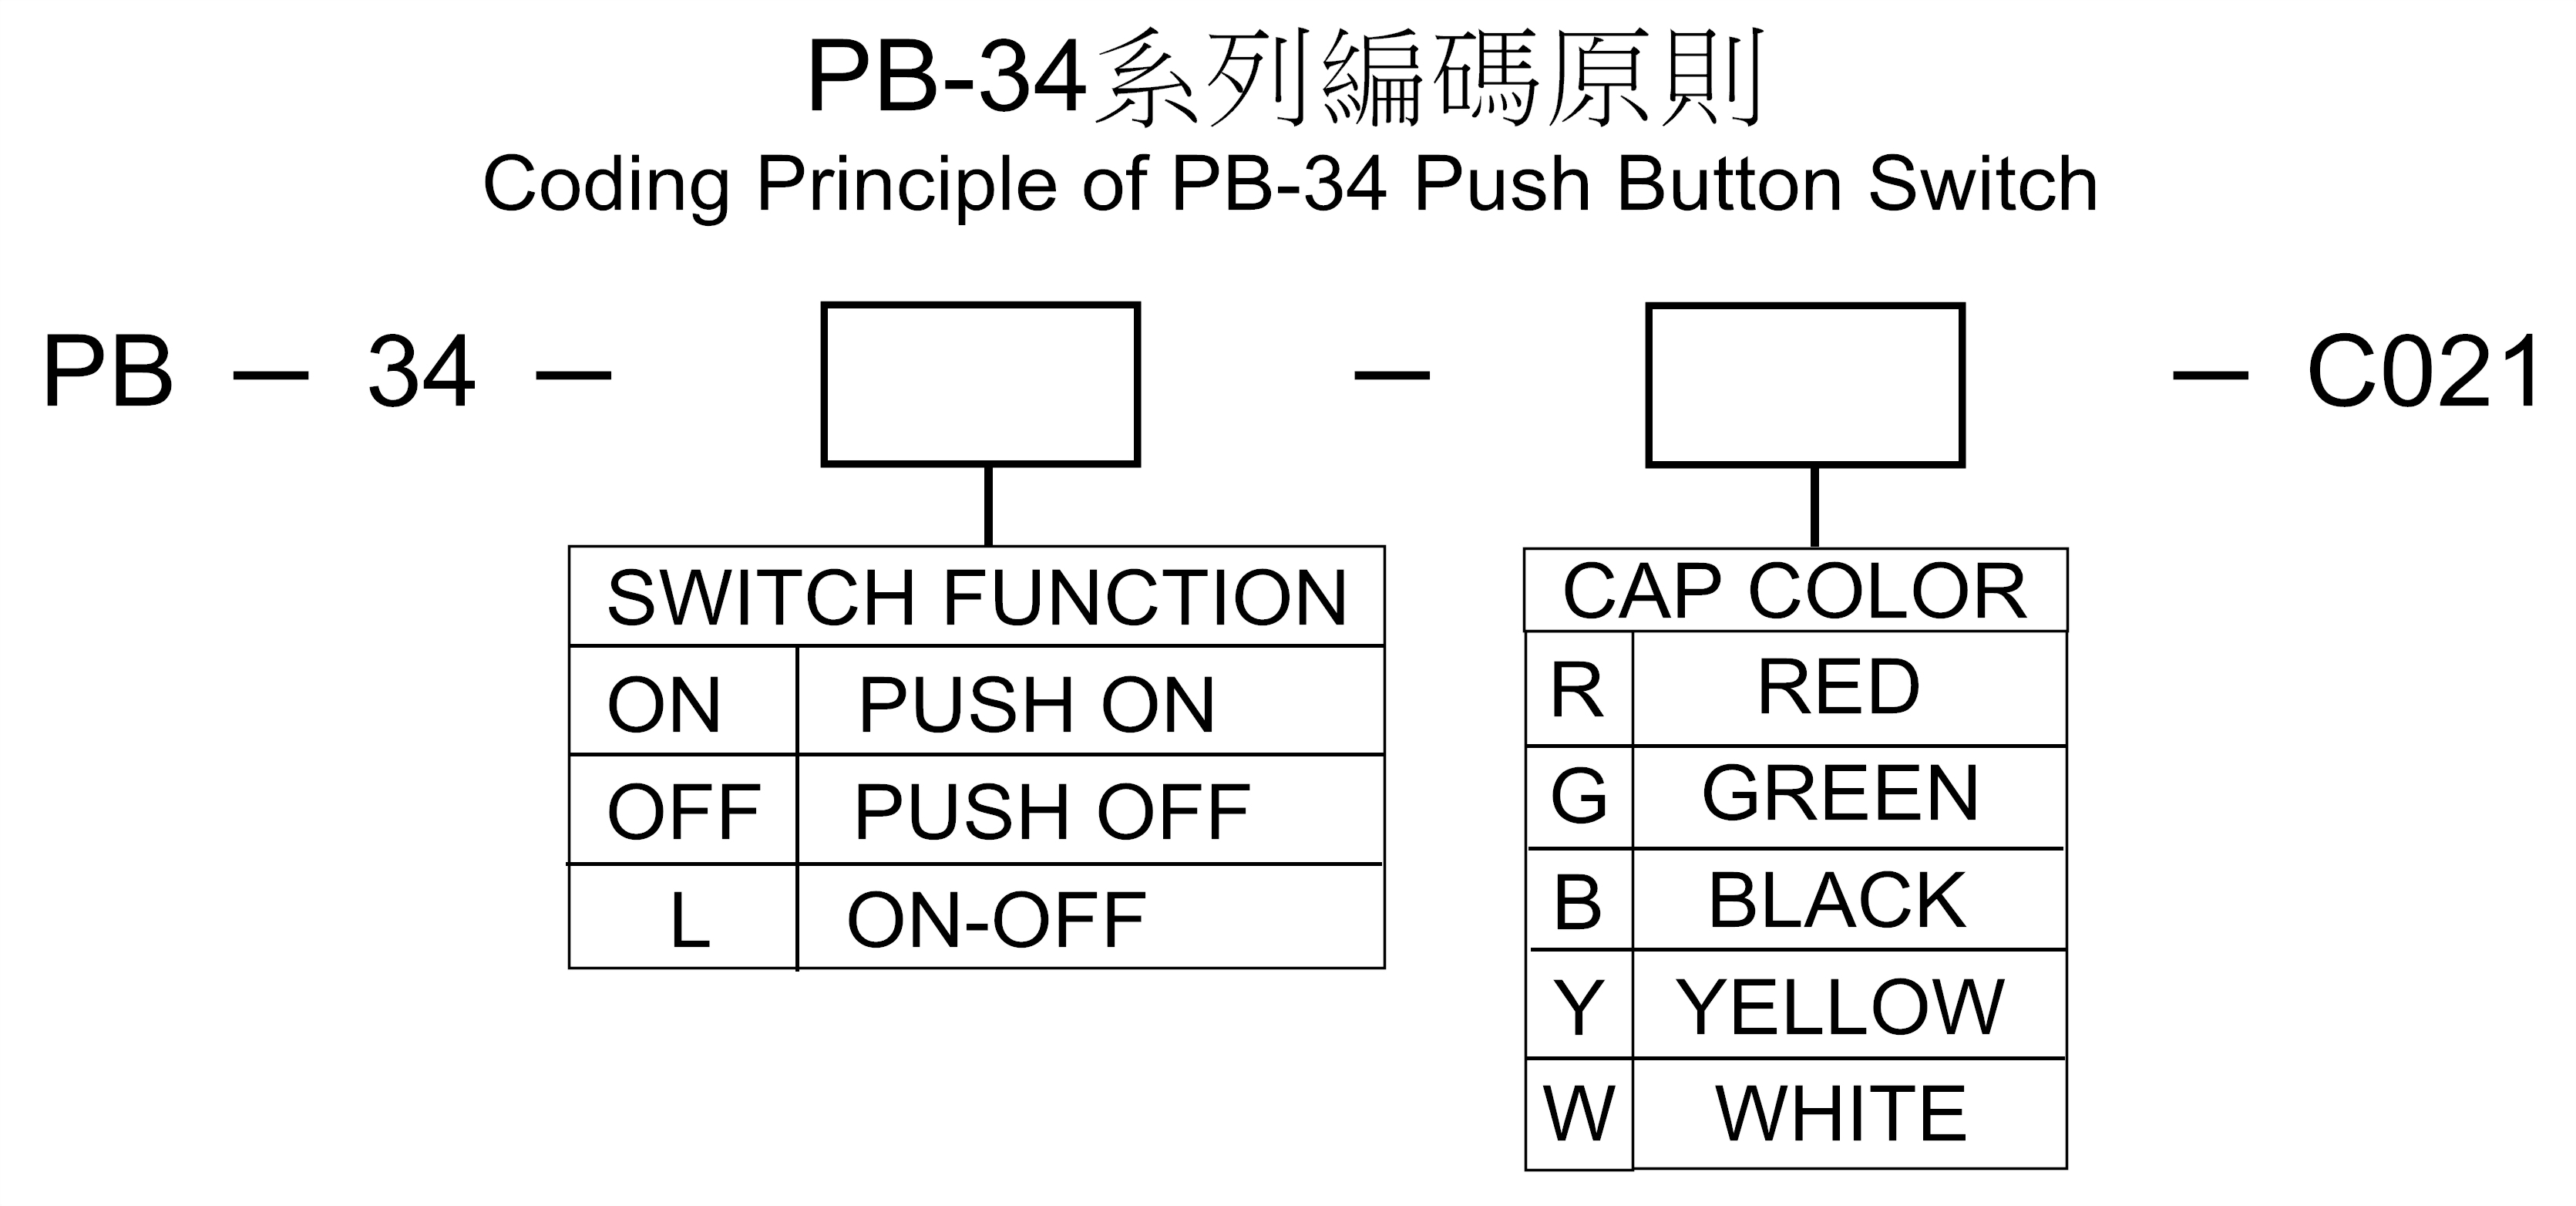 PB-34編碼原則.jpg